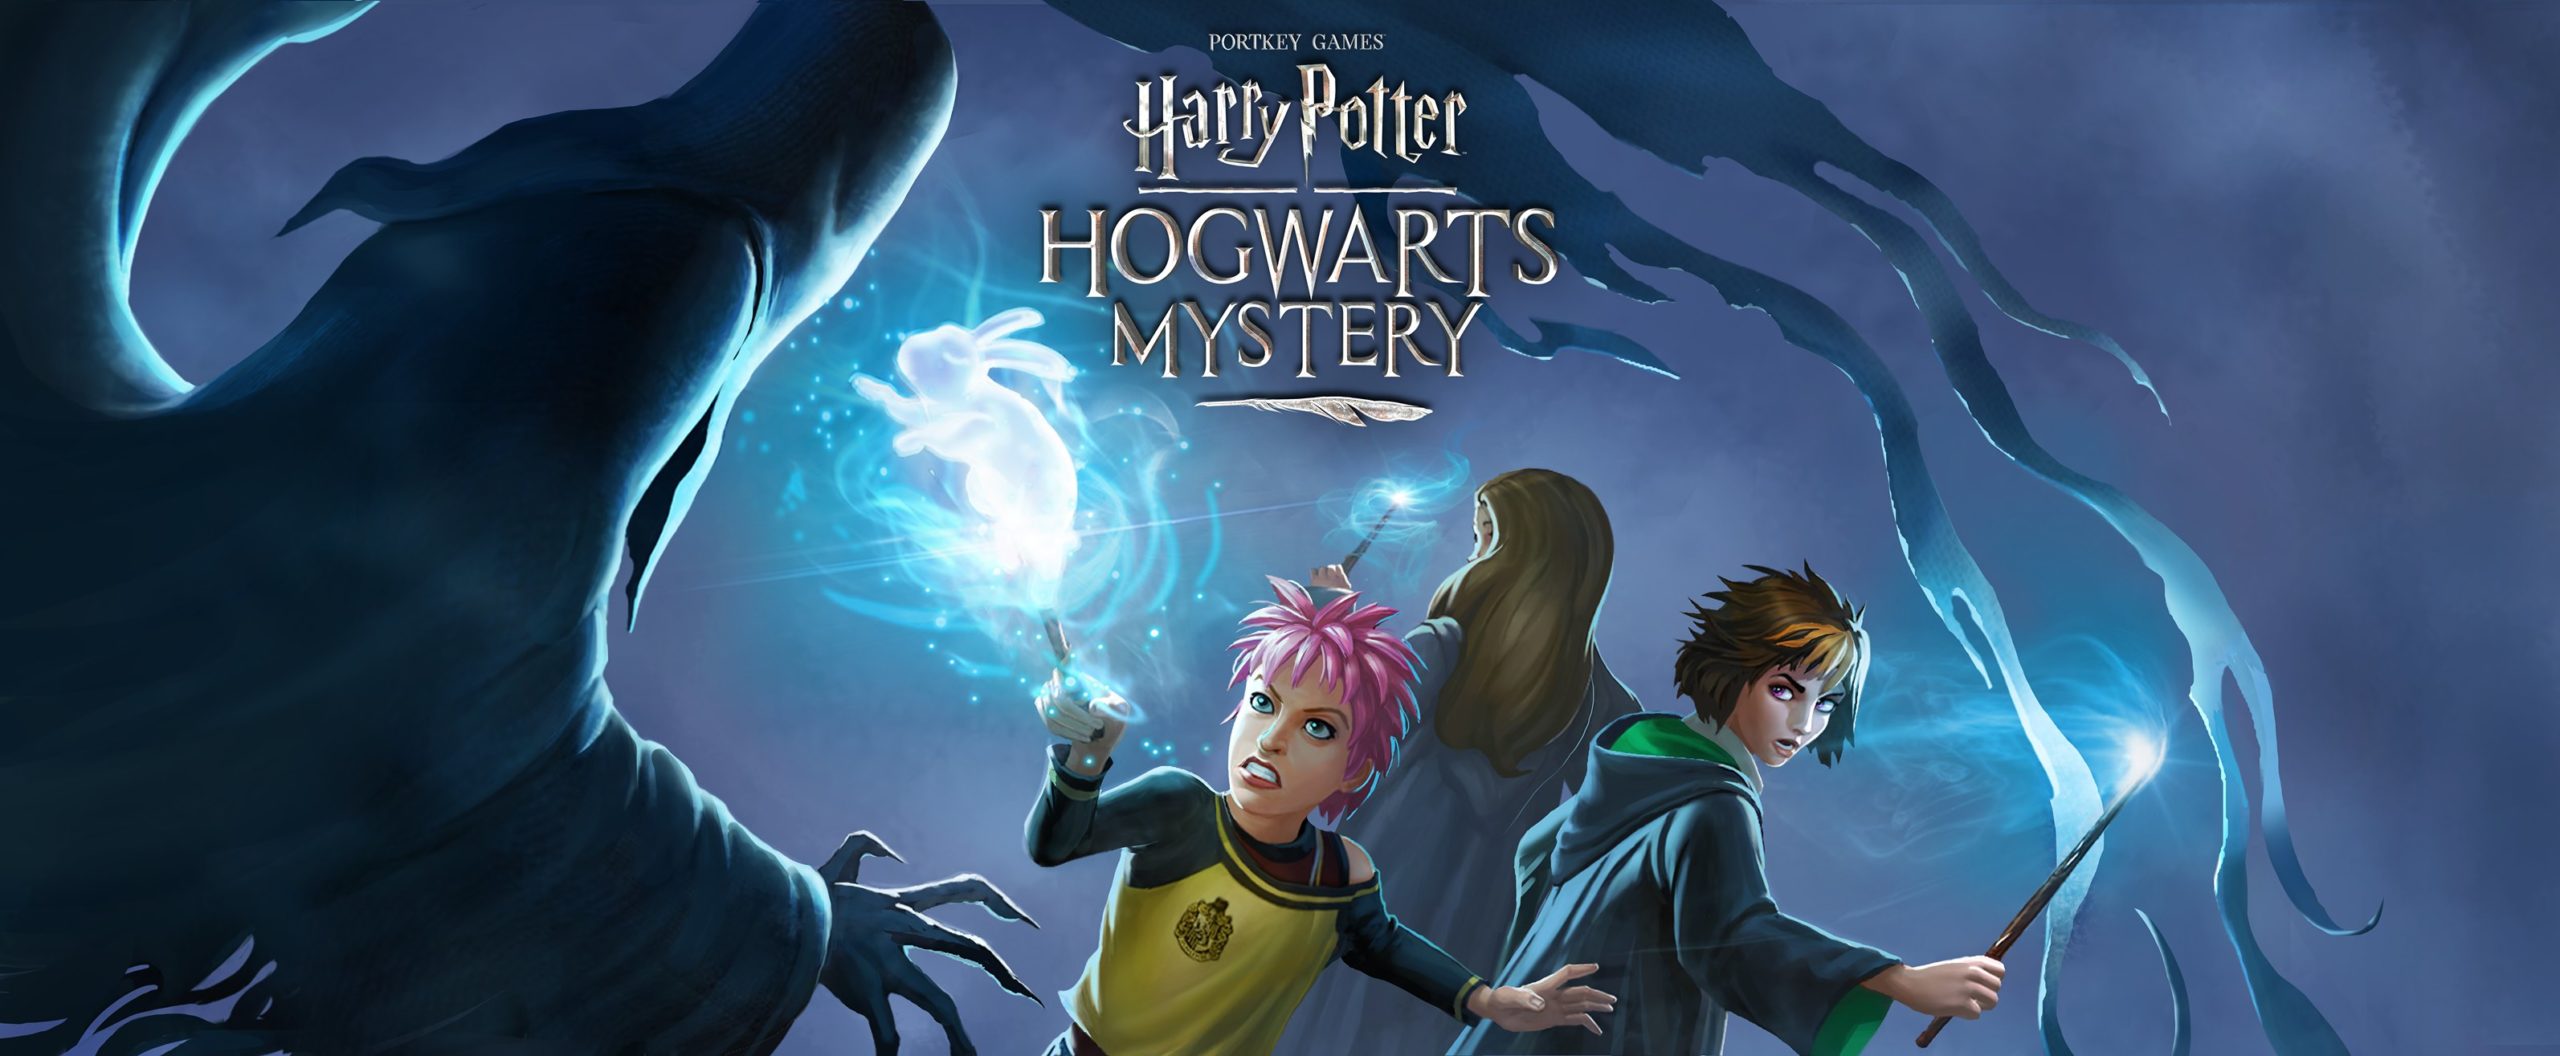 Harry Potter: Hogwarts Mystery se asocia con McDonald's